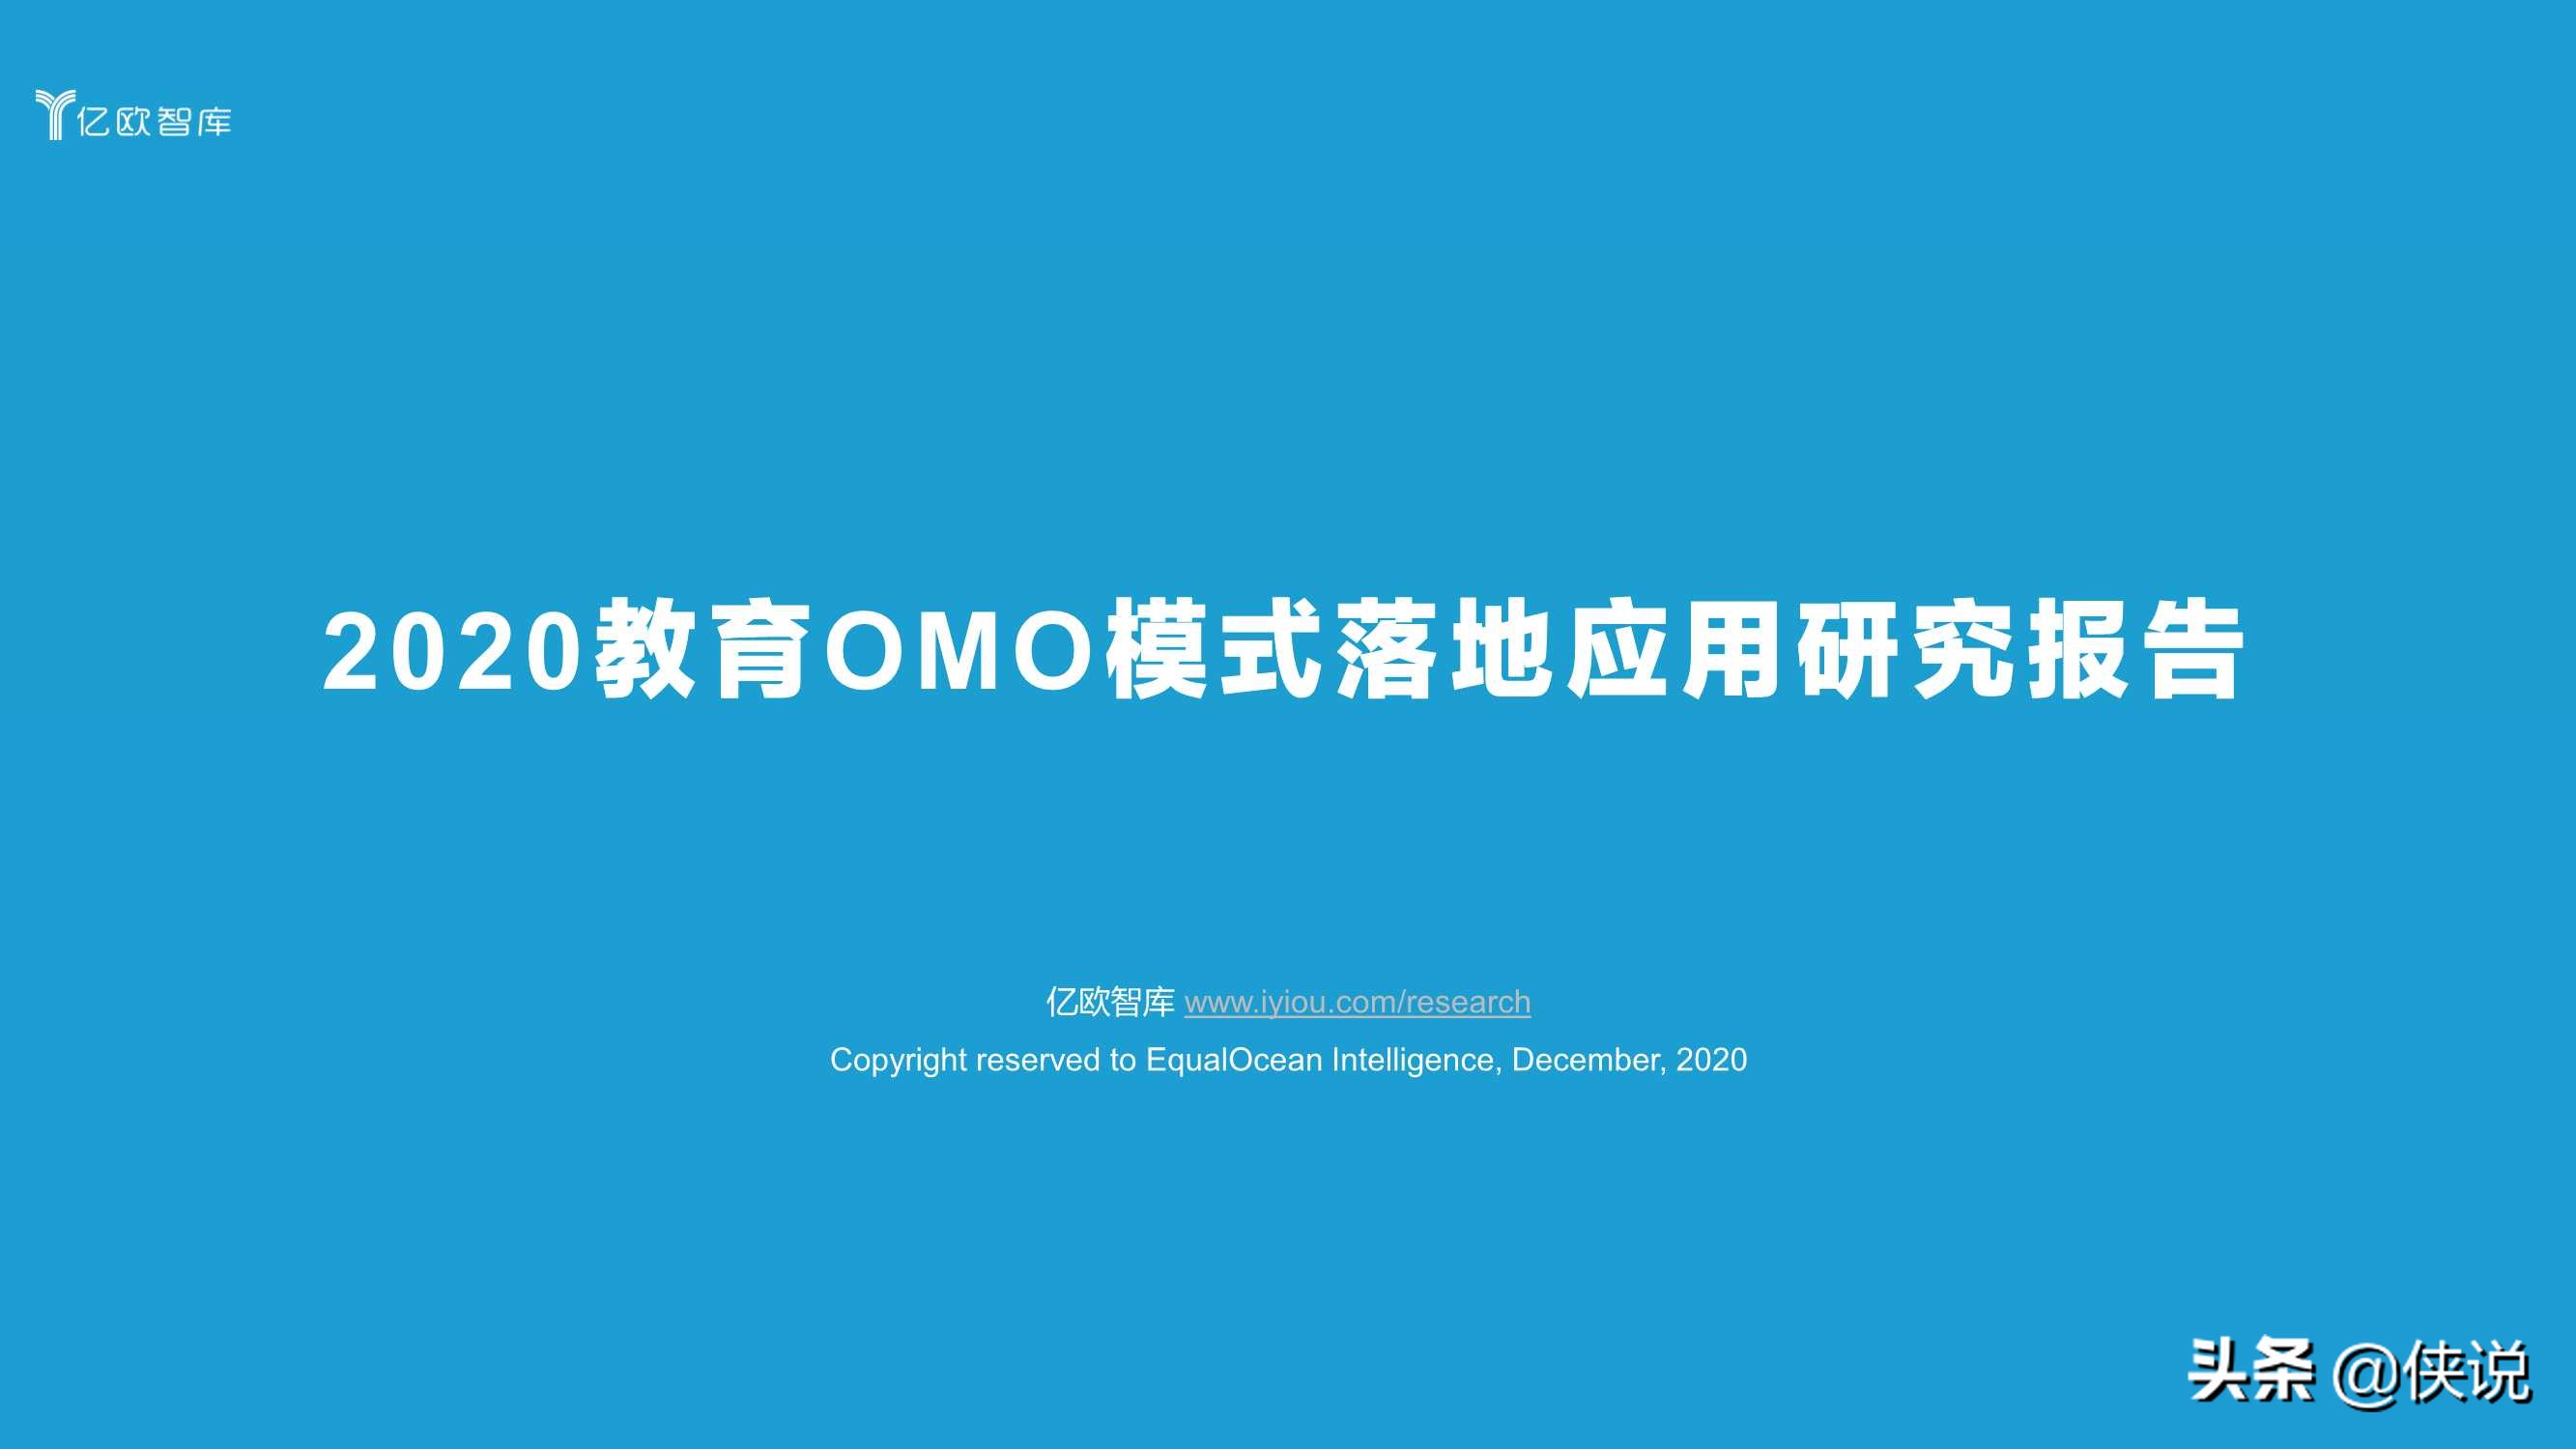 2020教育OMO模式落地应用研究报告